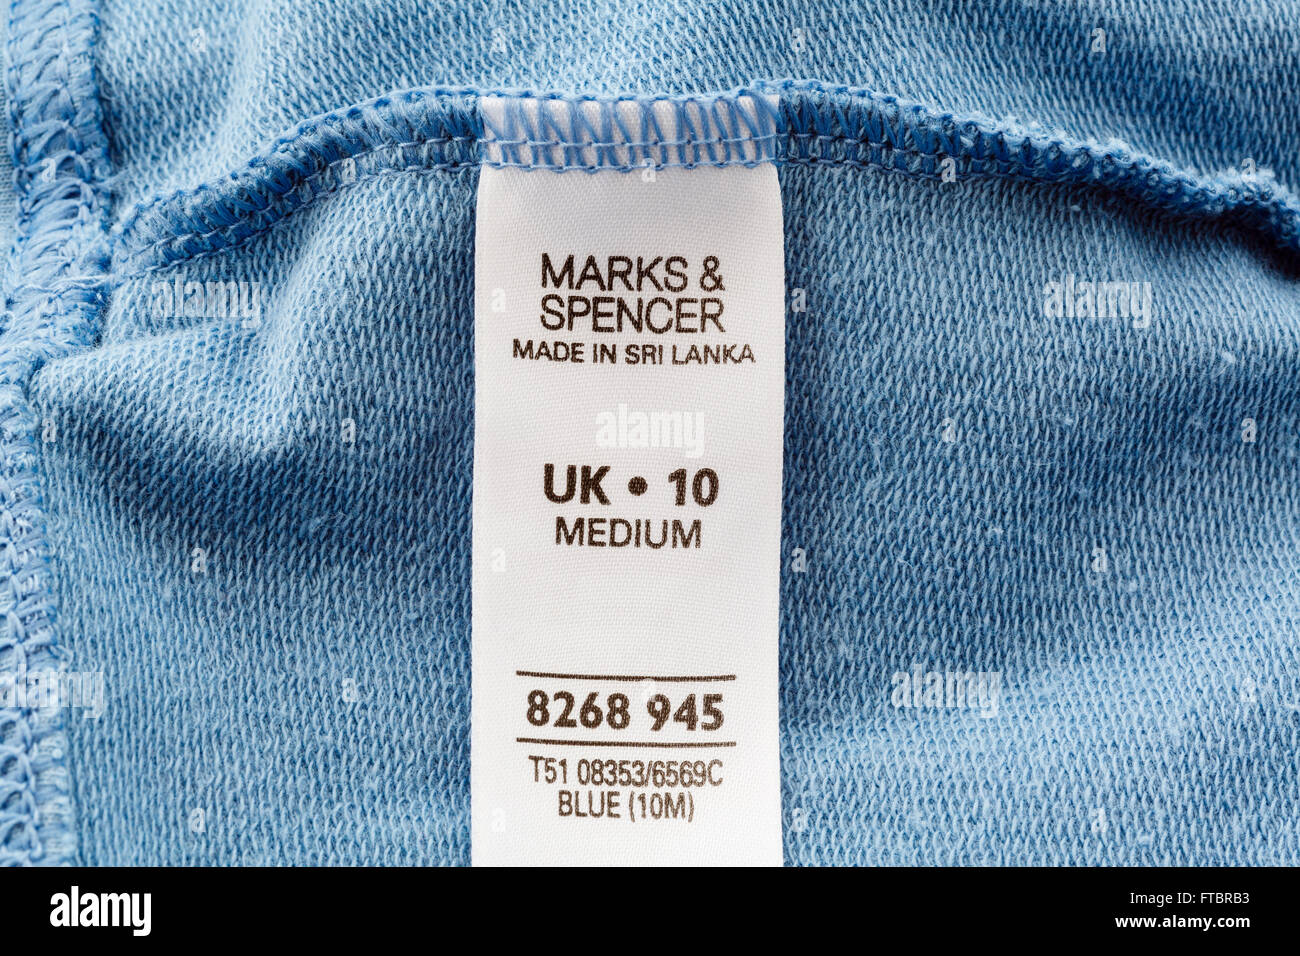 Marks and Spencer marque de vêtements cousus à l'intérieur d'un vêtement fait au Sri Lanka. En Angleterre, Royaume-Uni, Angleterre Banque D'Images